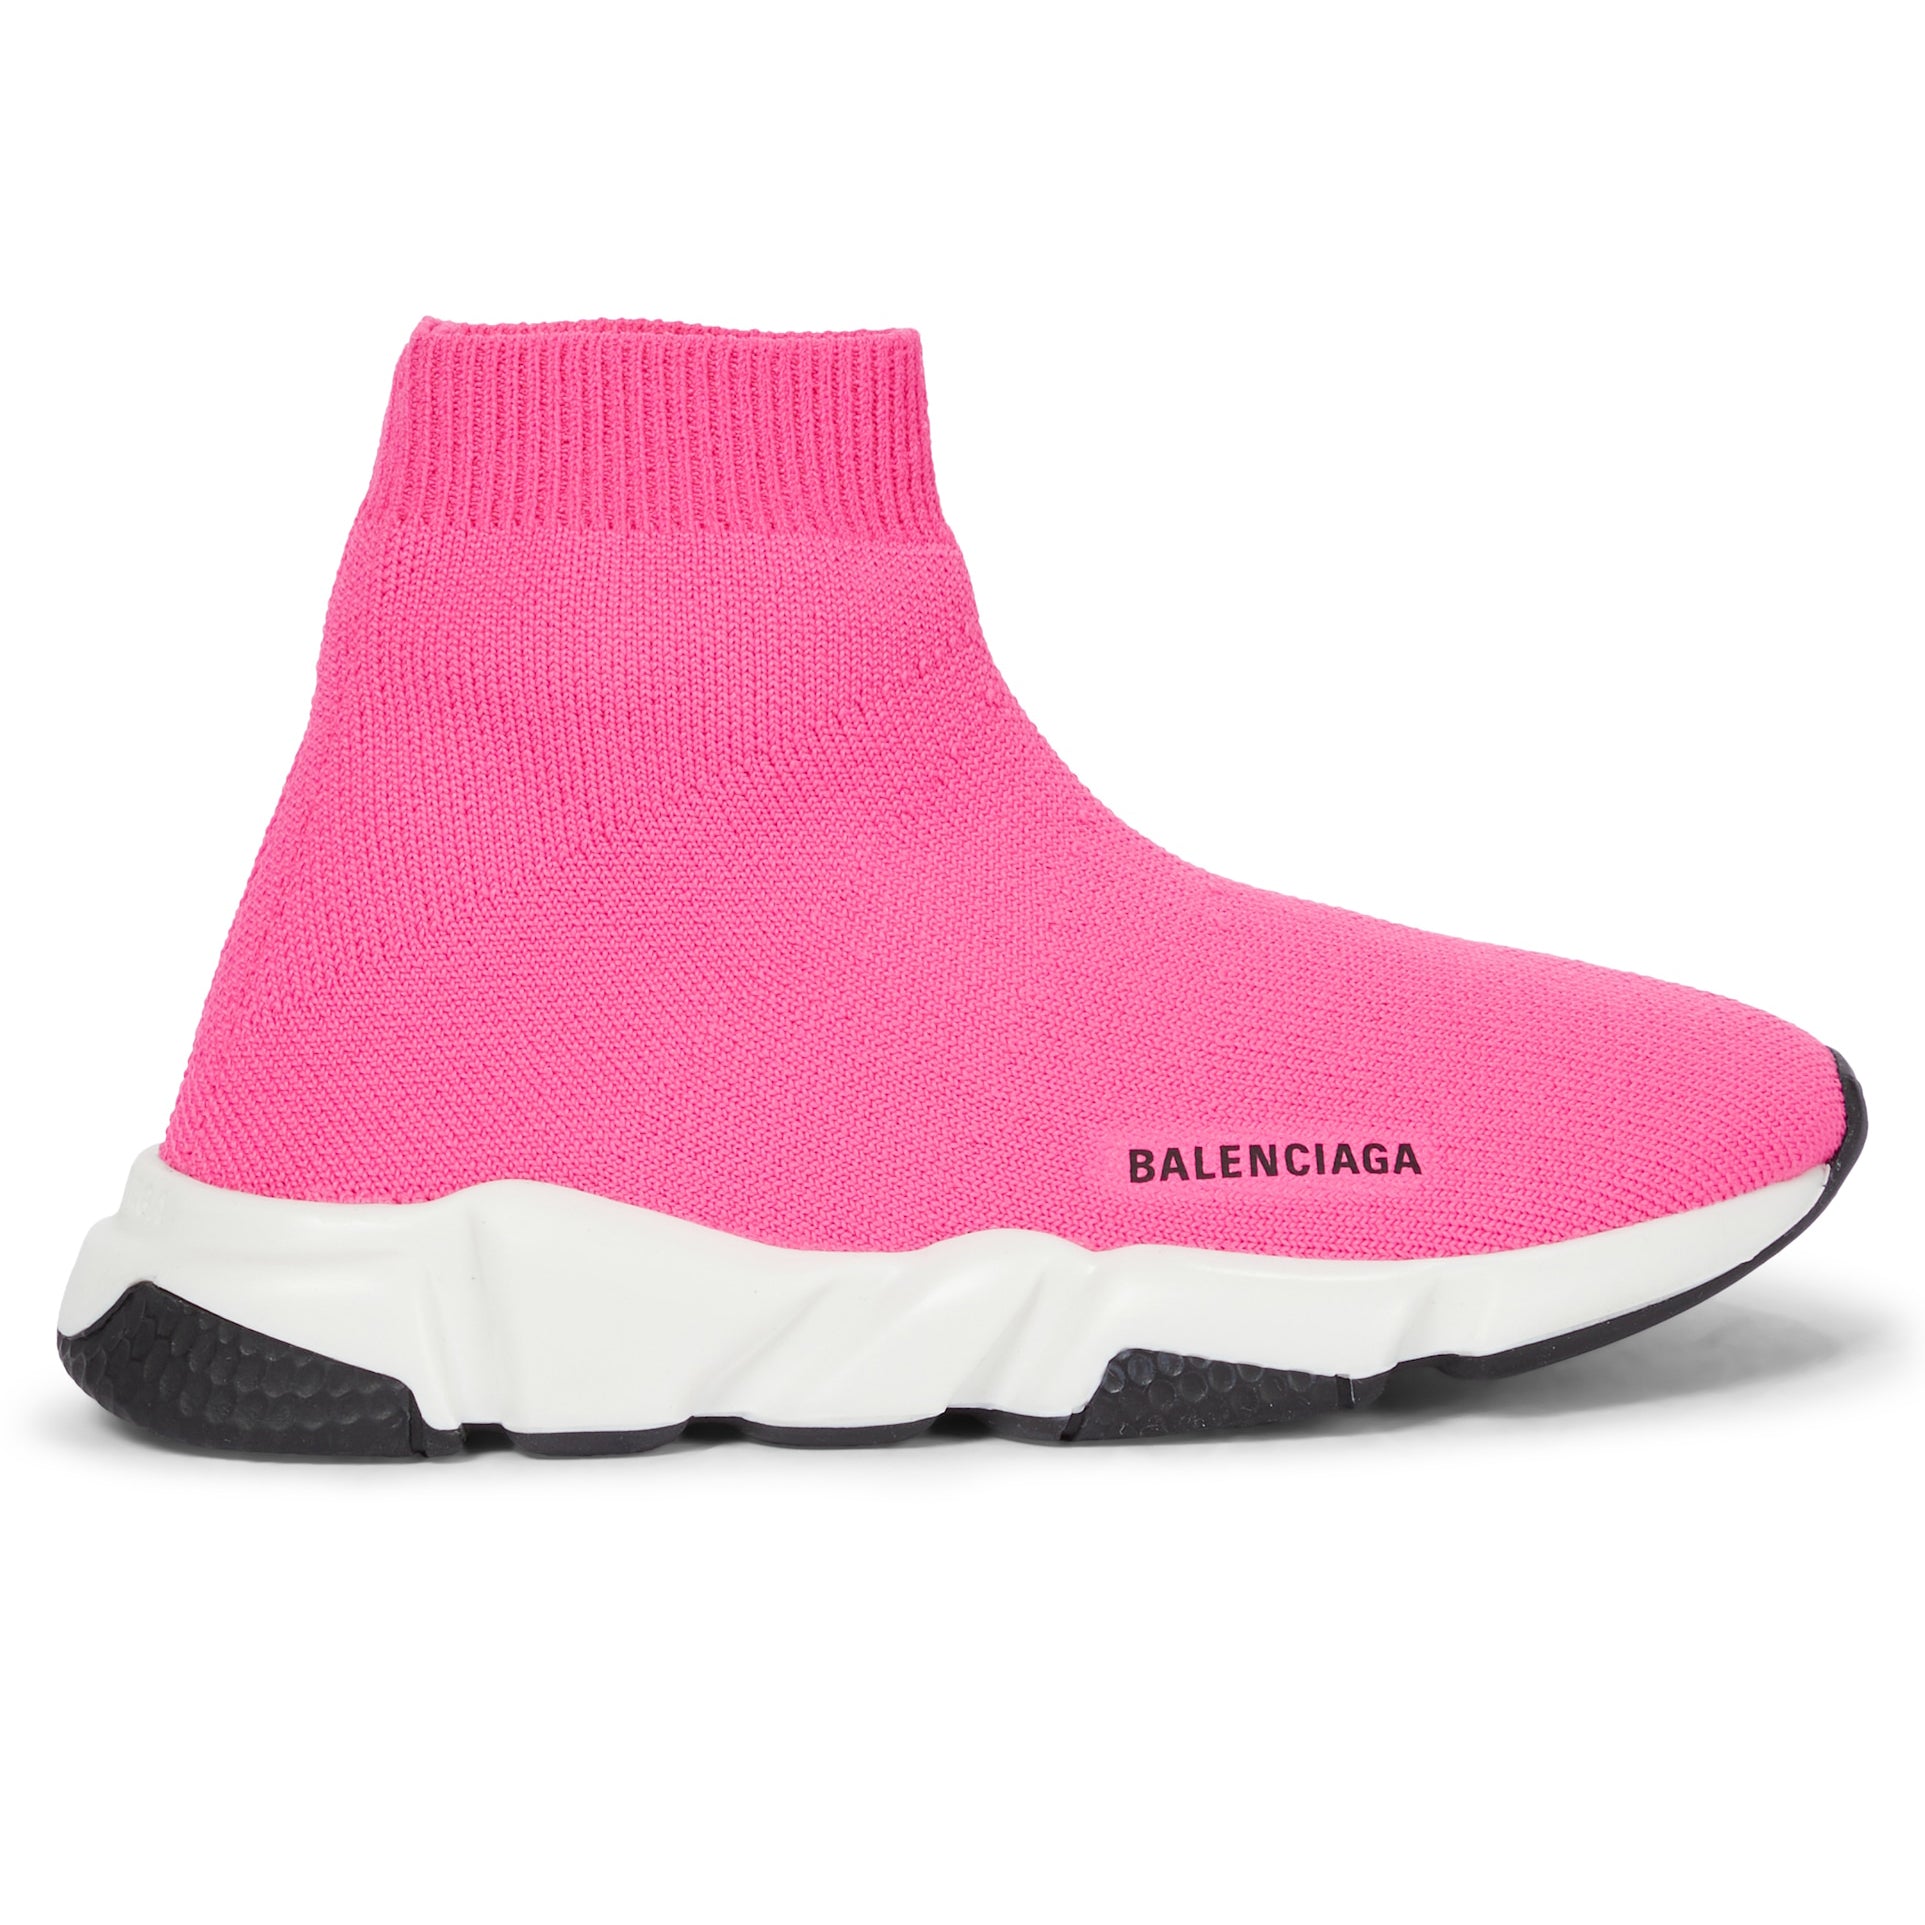 Boys & Girls Pink Sneakers